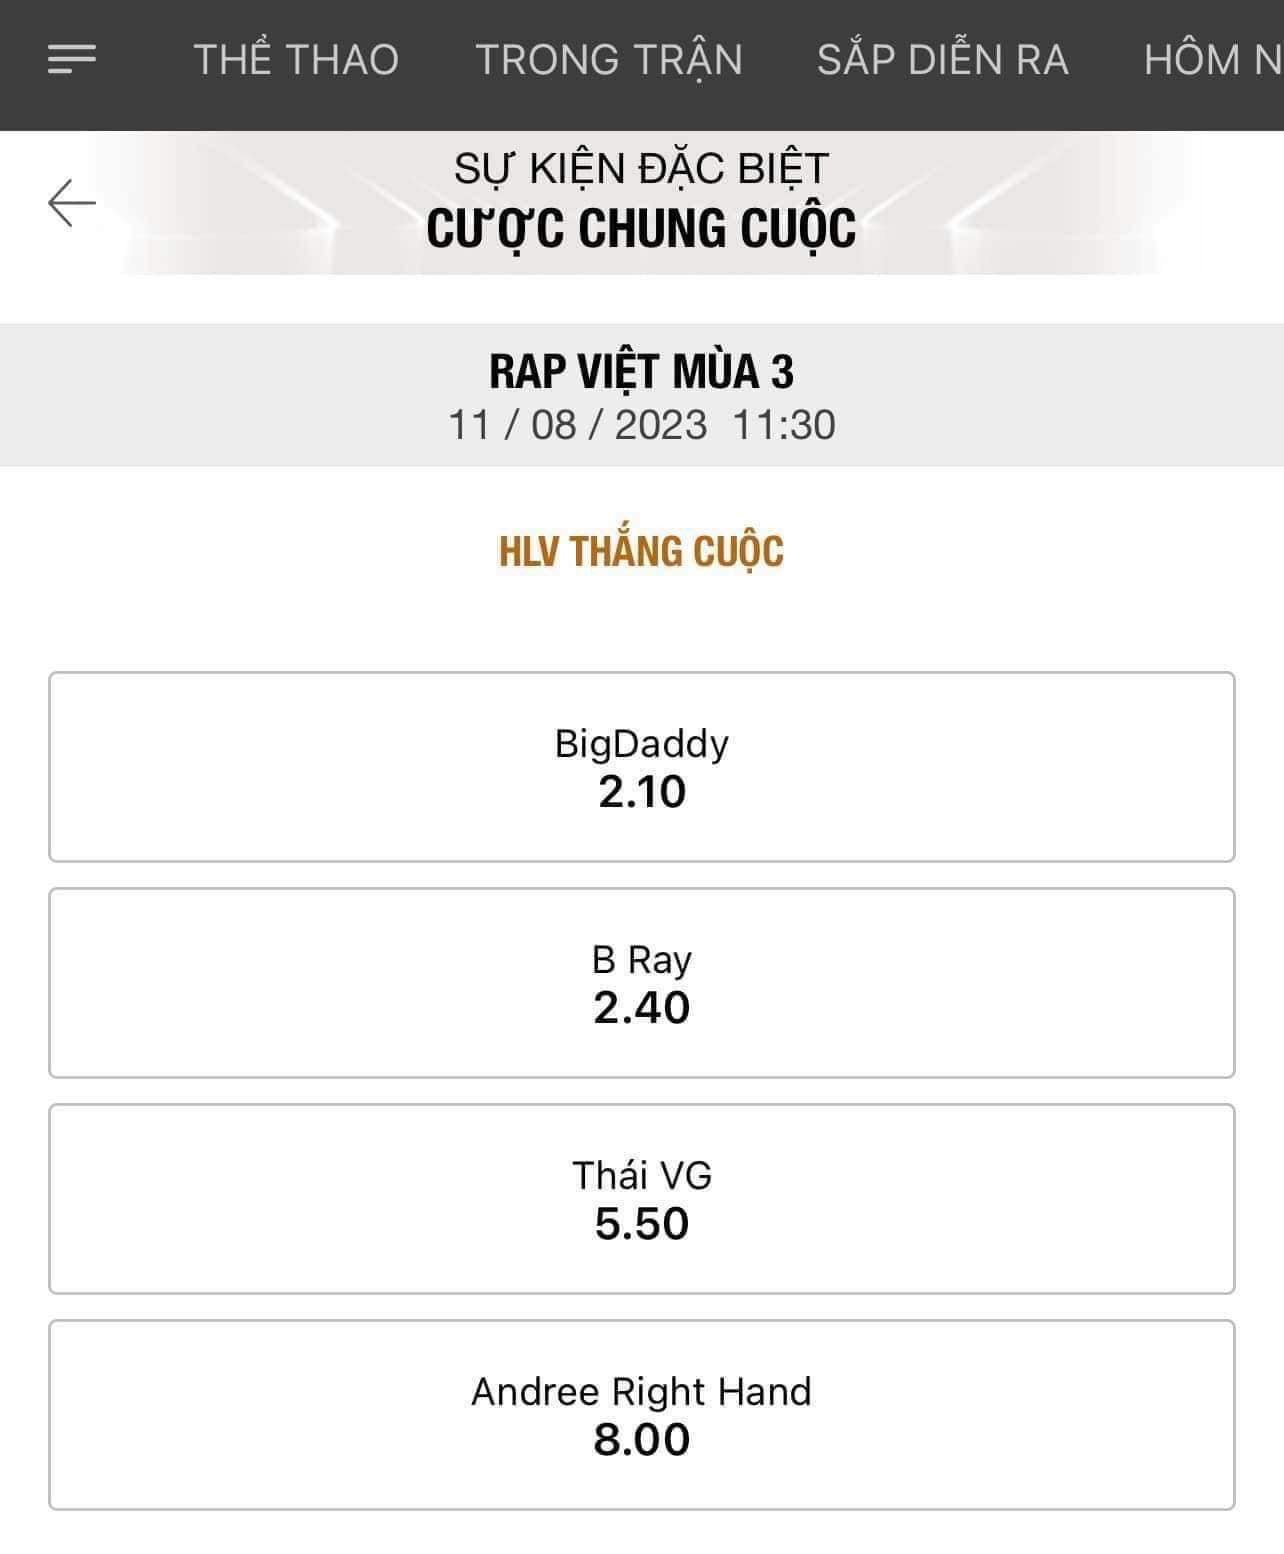 Kết quả Rap Việt bị đưa ra cá độ trực tuyến phi pháp